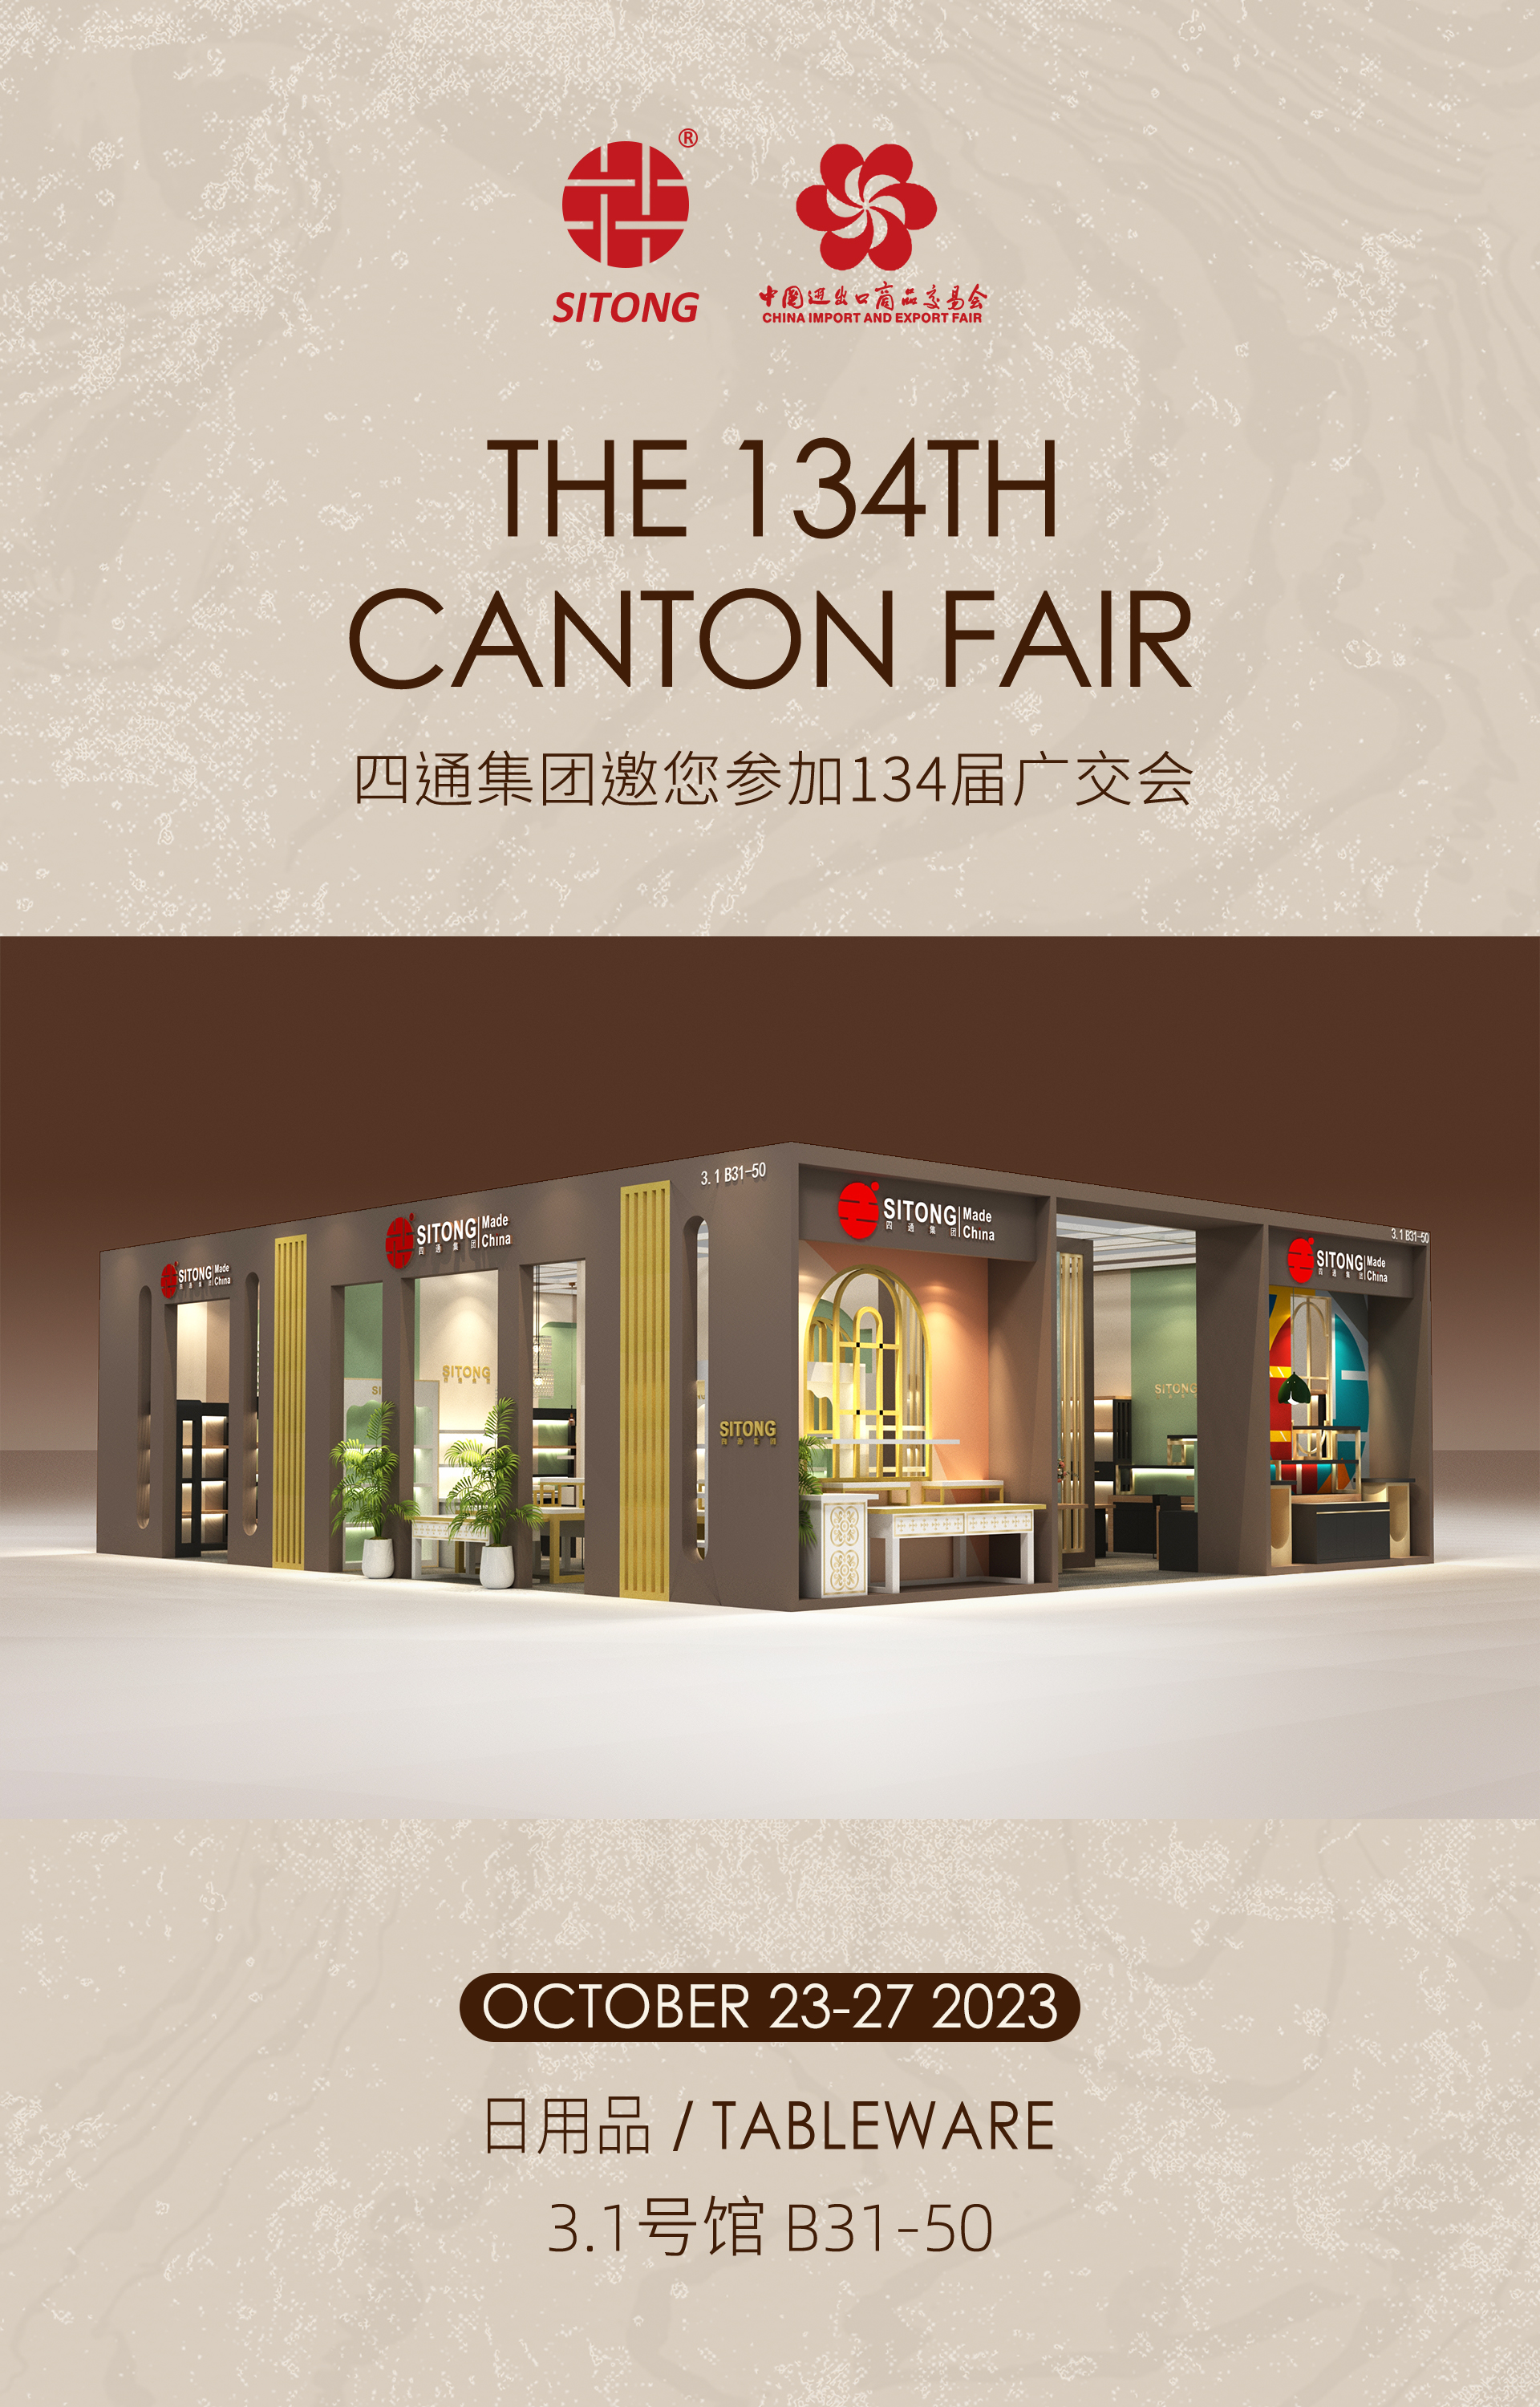 Benvido a visitarnos na 134th Canton Fair